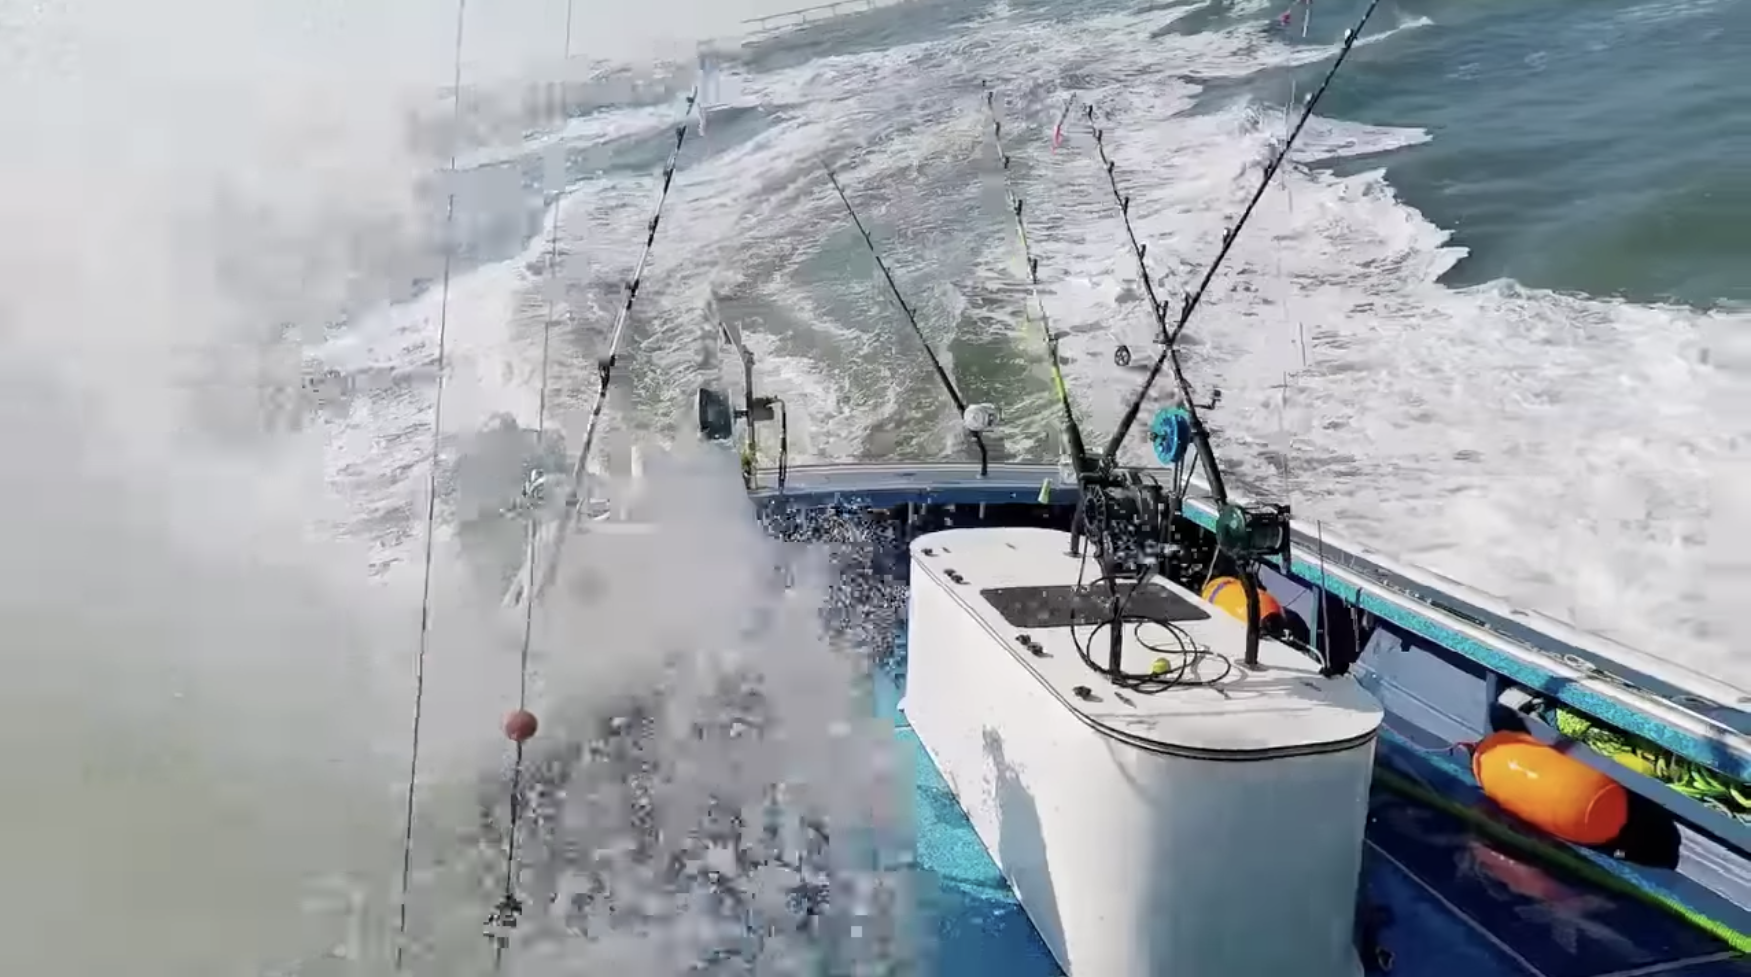 Thunfischfangboote sind so angepasst, dass sie den rauen Meeresbedingungen standhalten